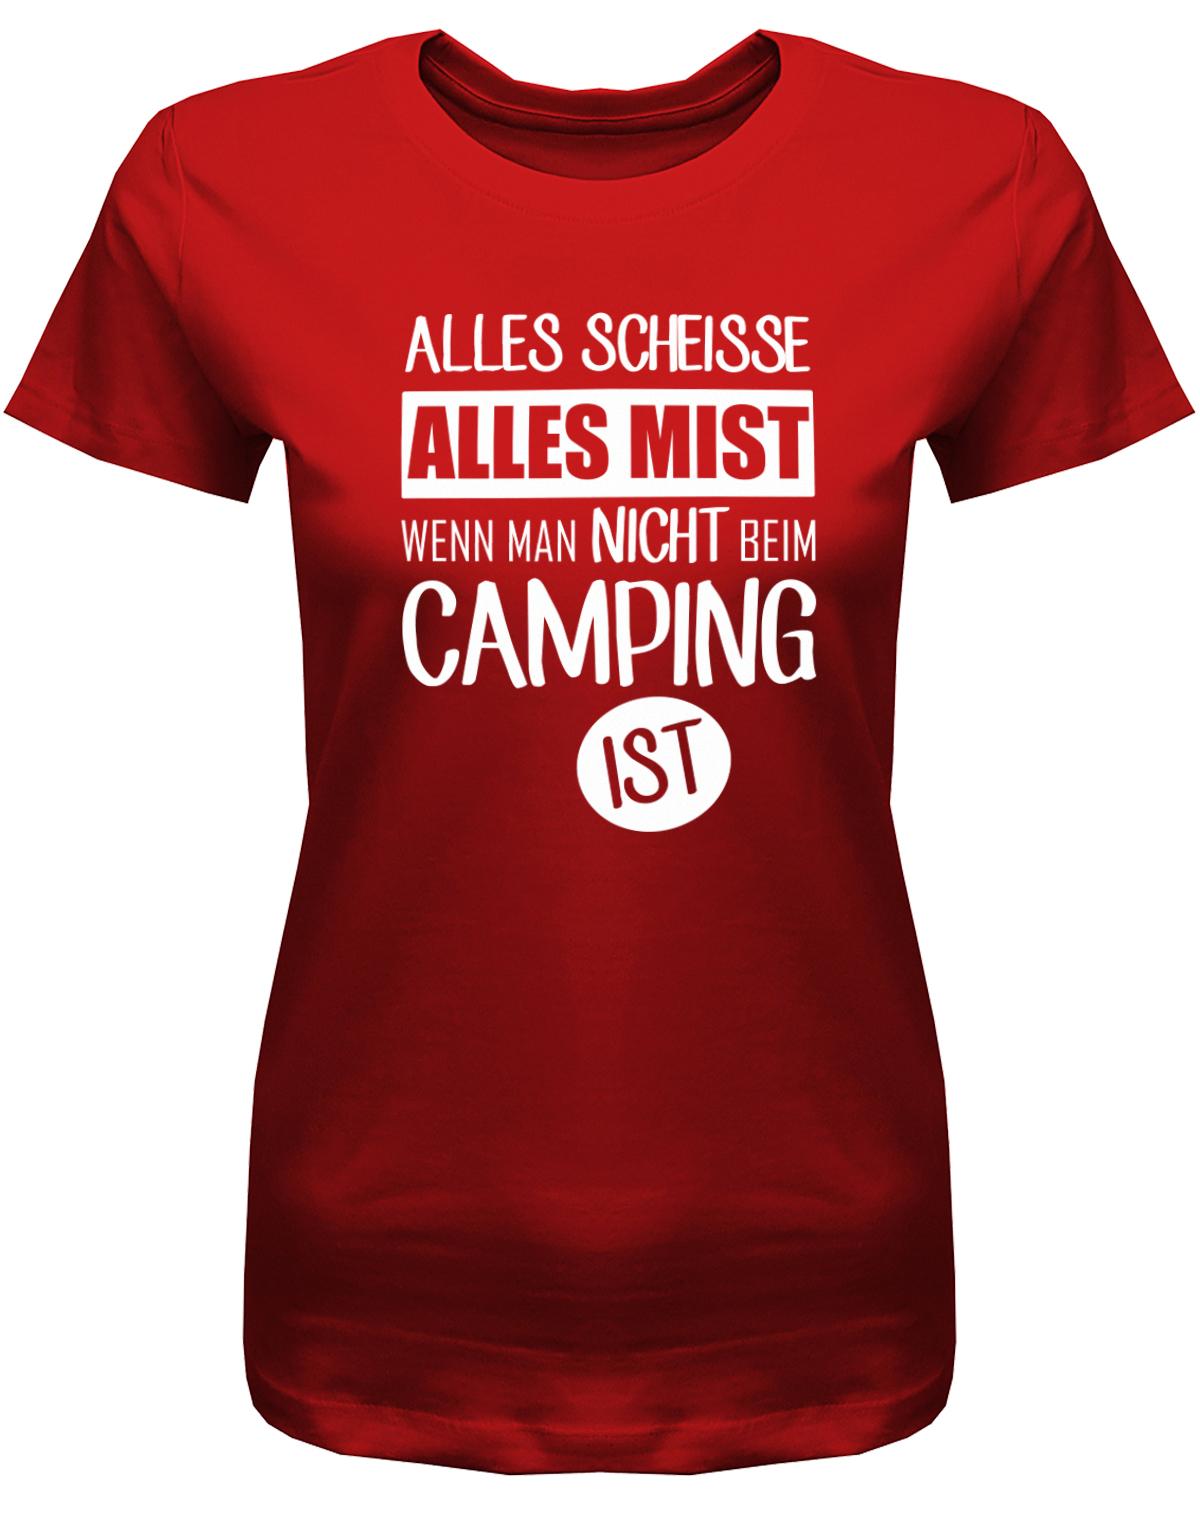 Alles-SCheisse-alles-Mist-wenn-man-nicht-bei-Camping-ist-Damen-Shirt-RotMMlaoQiUlsYlR